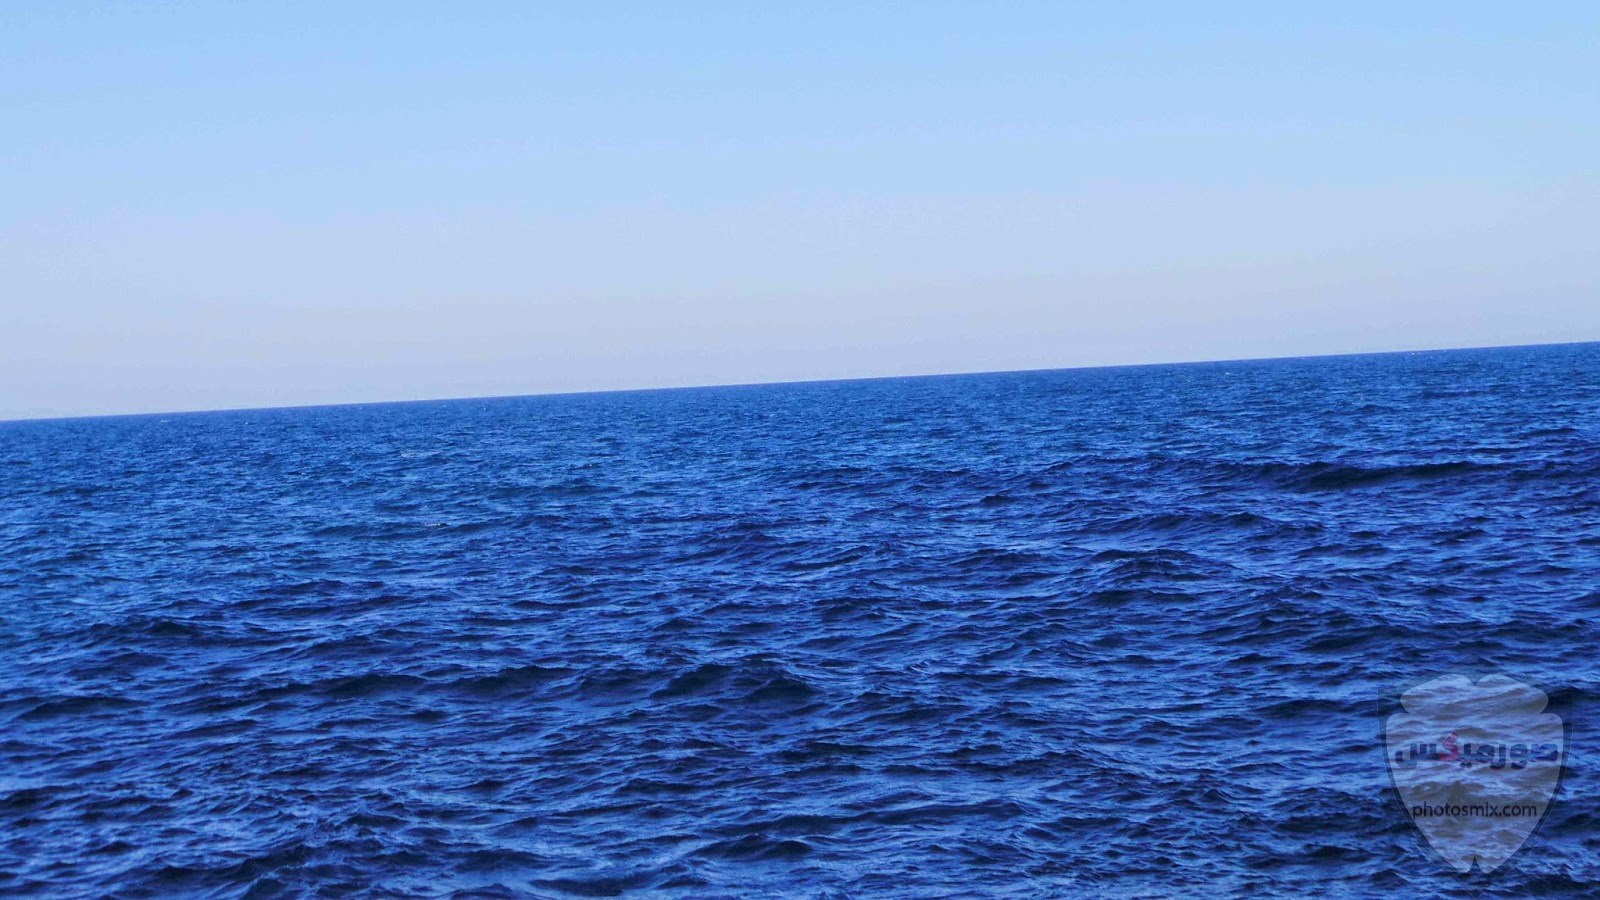 صور البحر 2020 خلفيات بحر وسفن للفوتوشوب 4